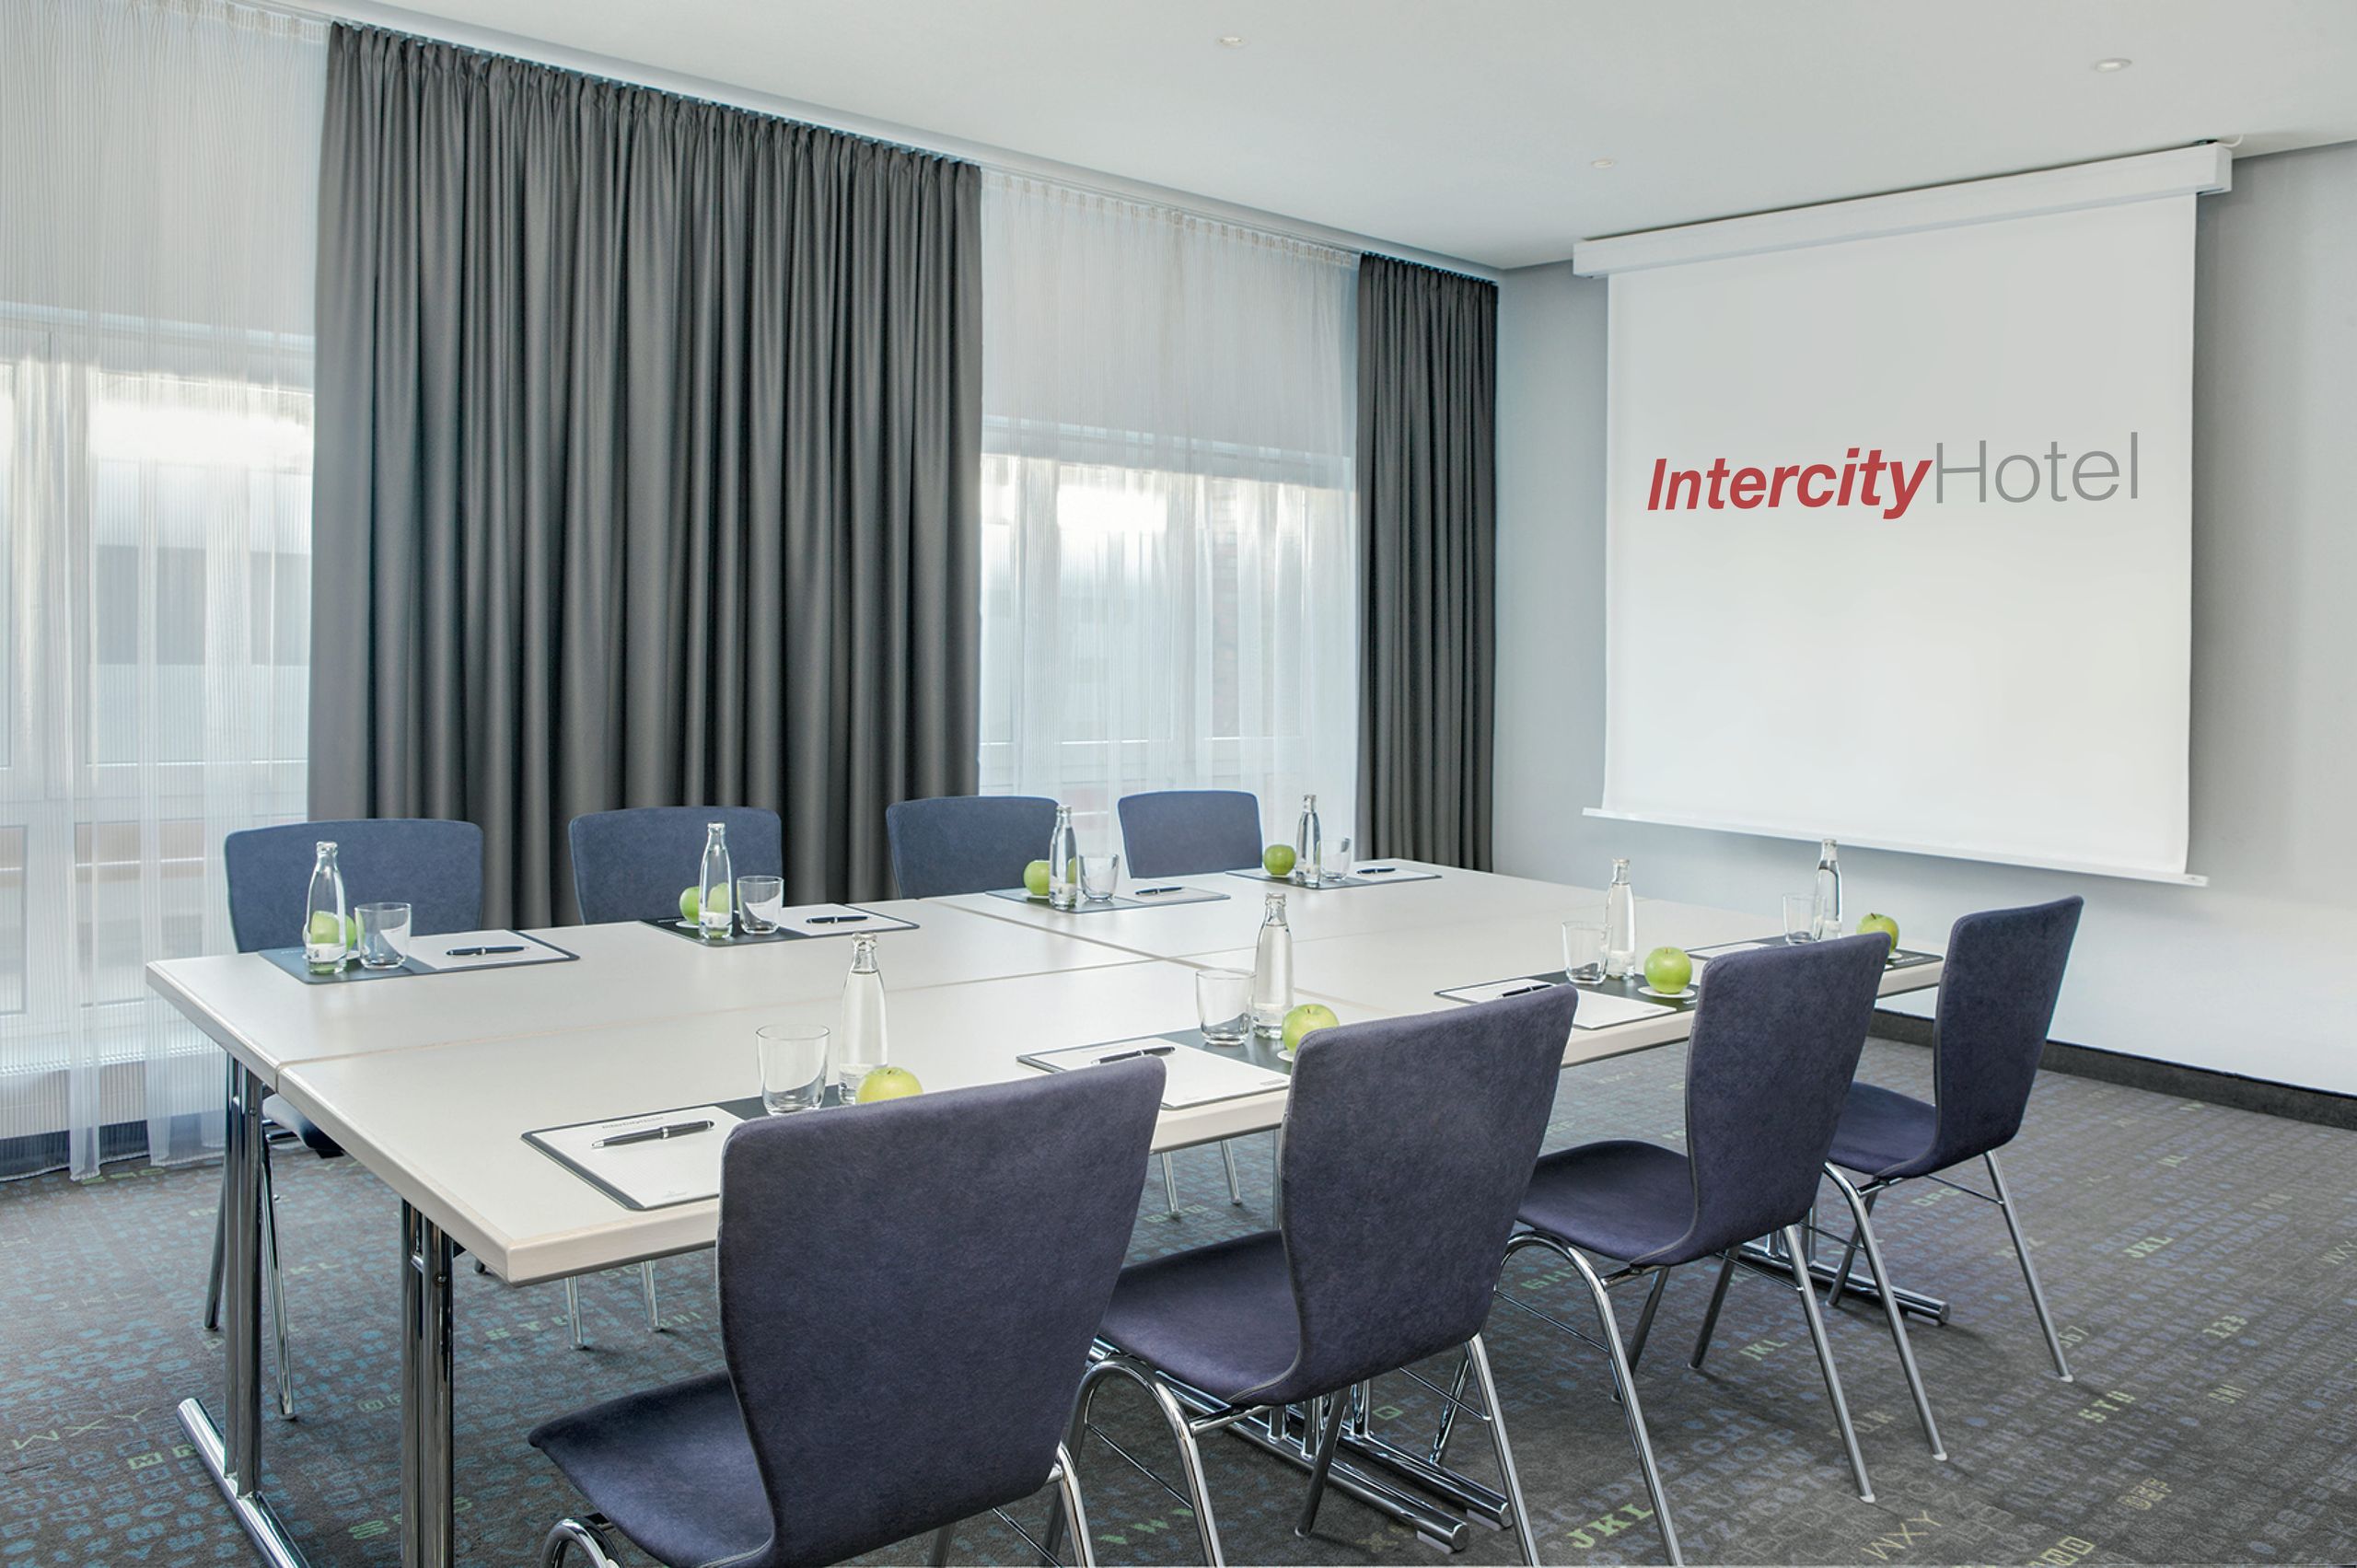 IntercityHotel Hamburg-Altona - Találkozók & események